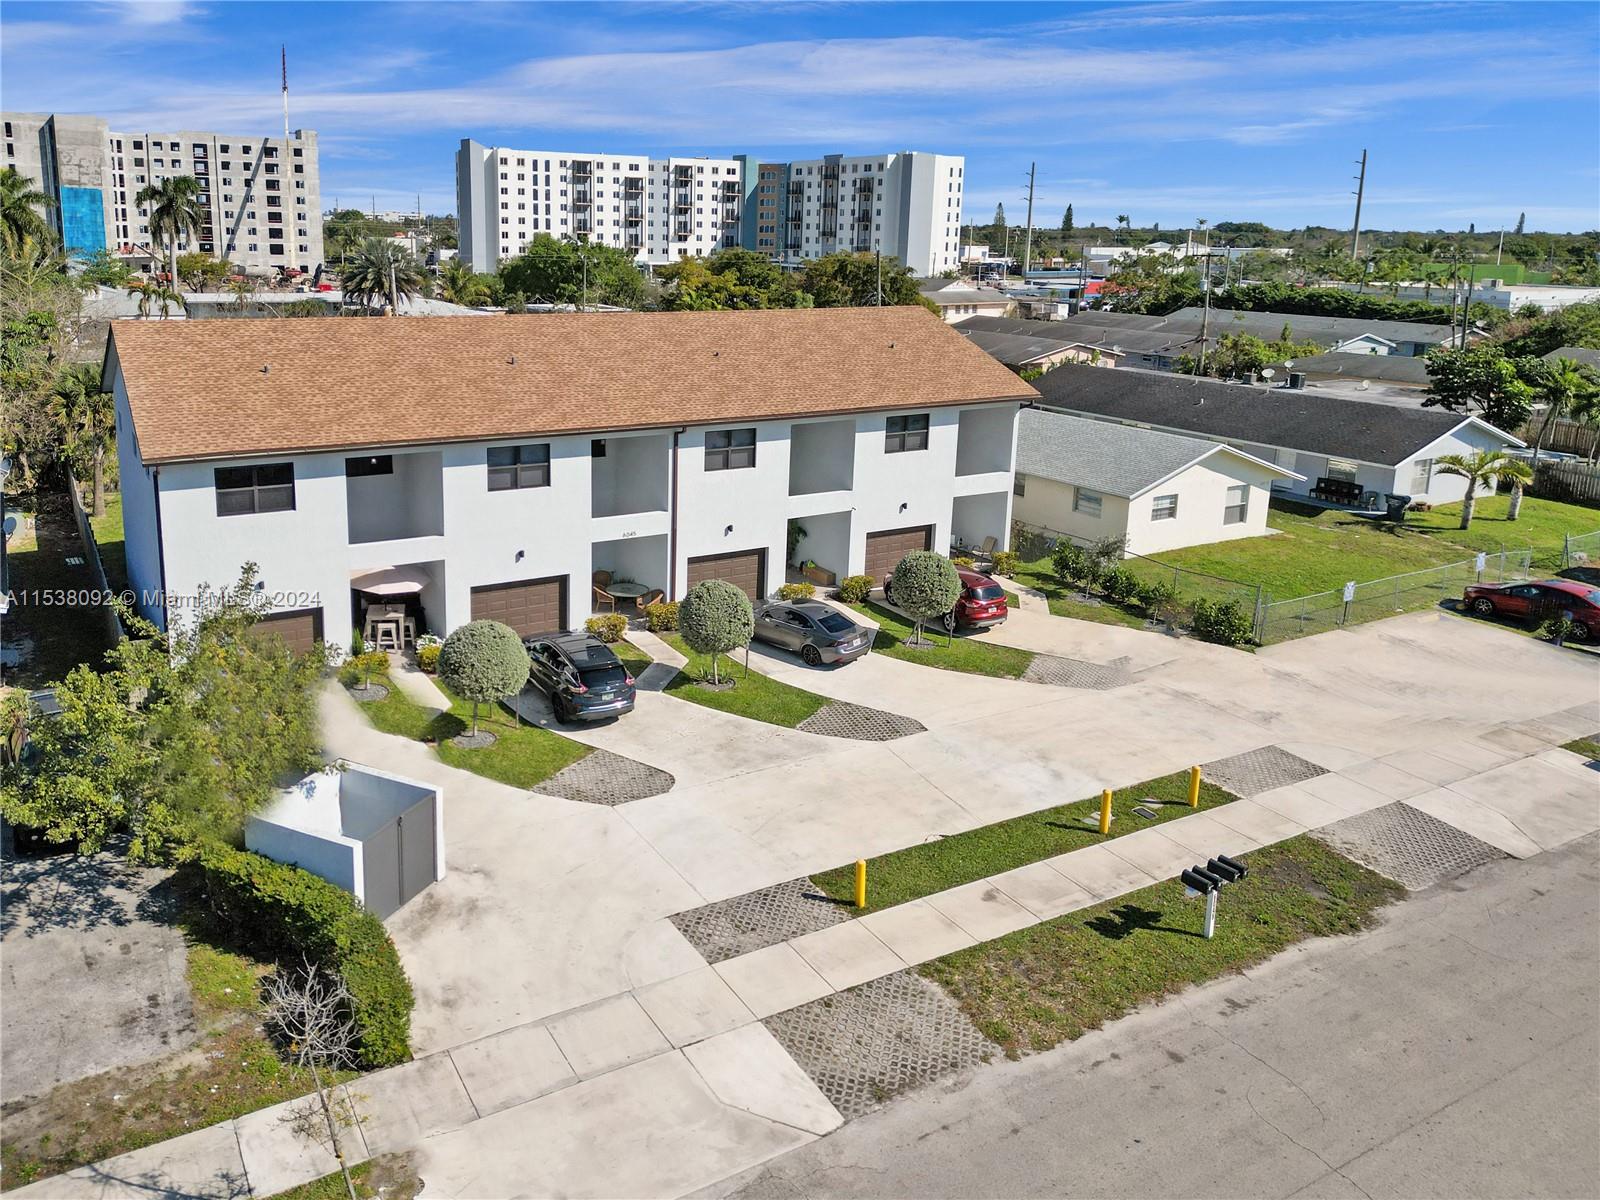 Rental Property at 6045 Pierce St St, Hollywood, Broward County, Florida -  - $1,625,000 MO.